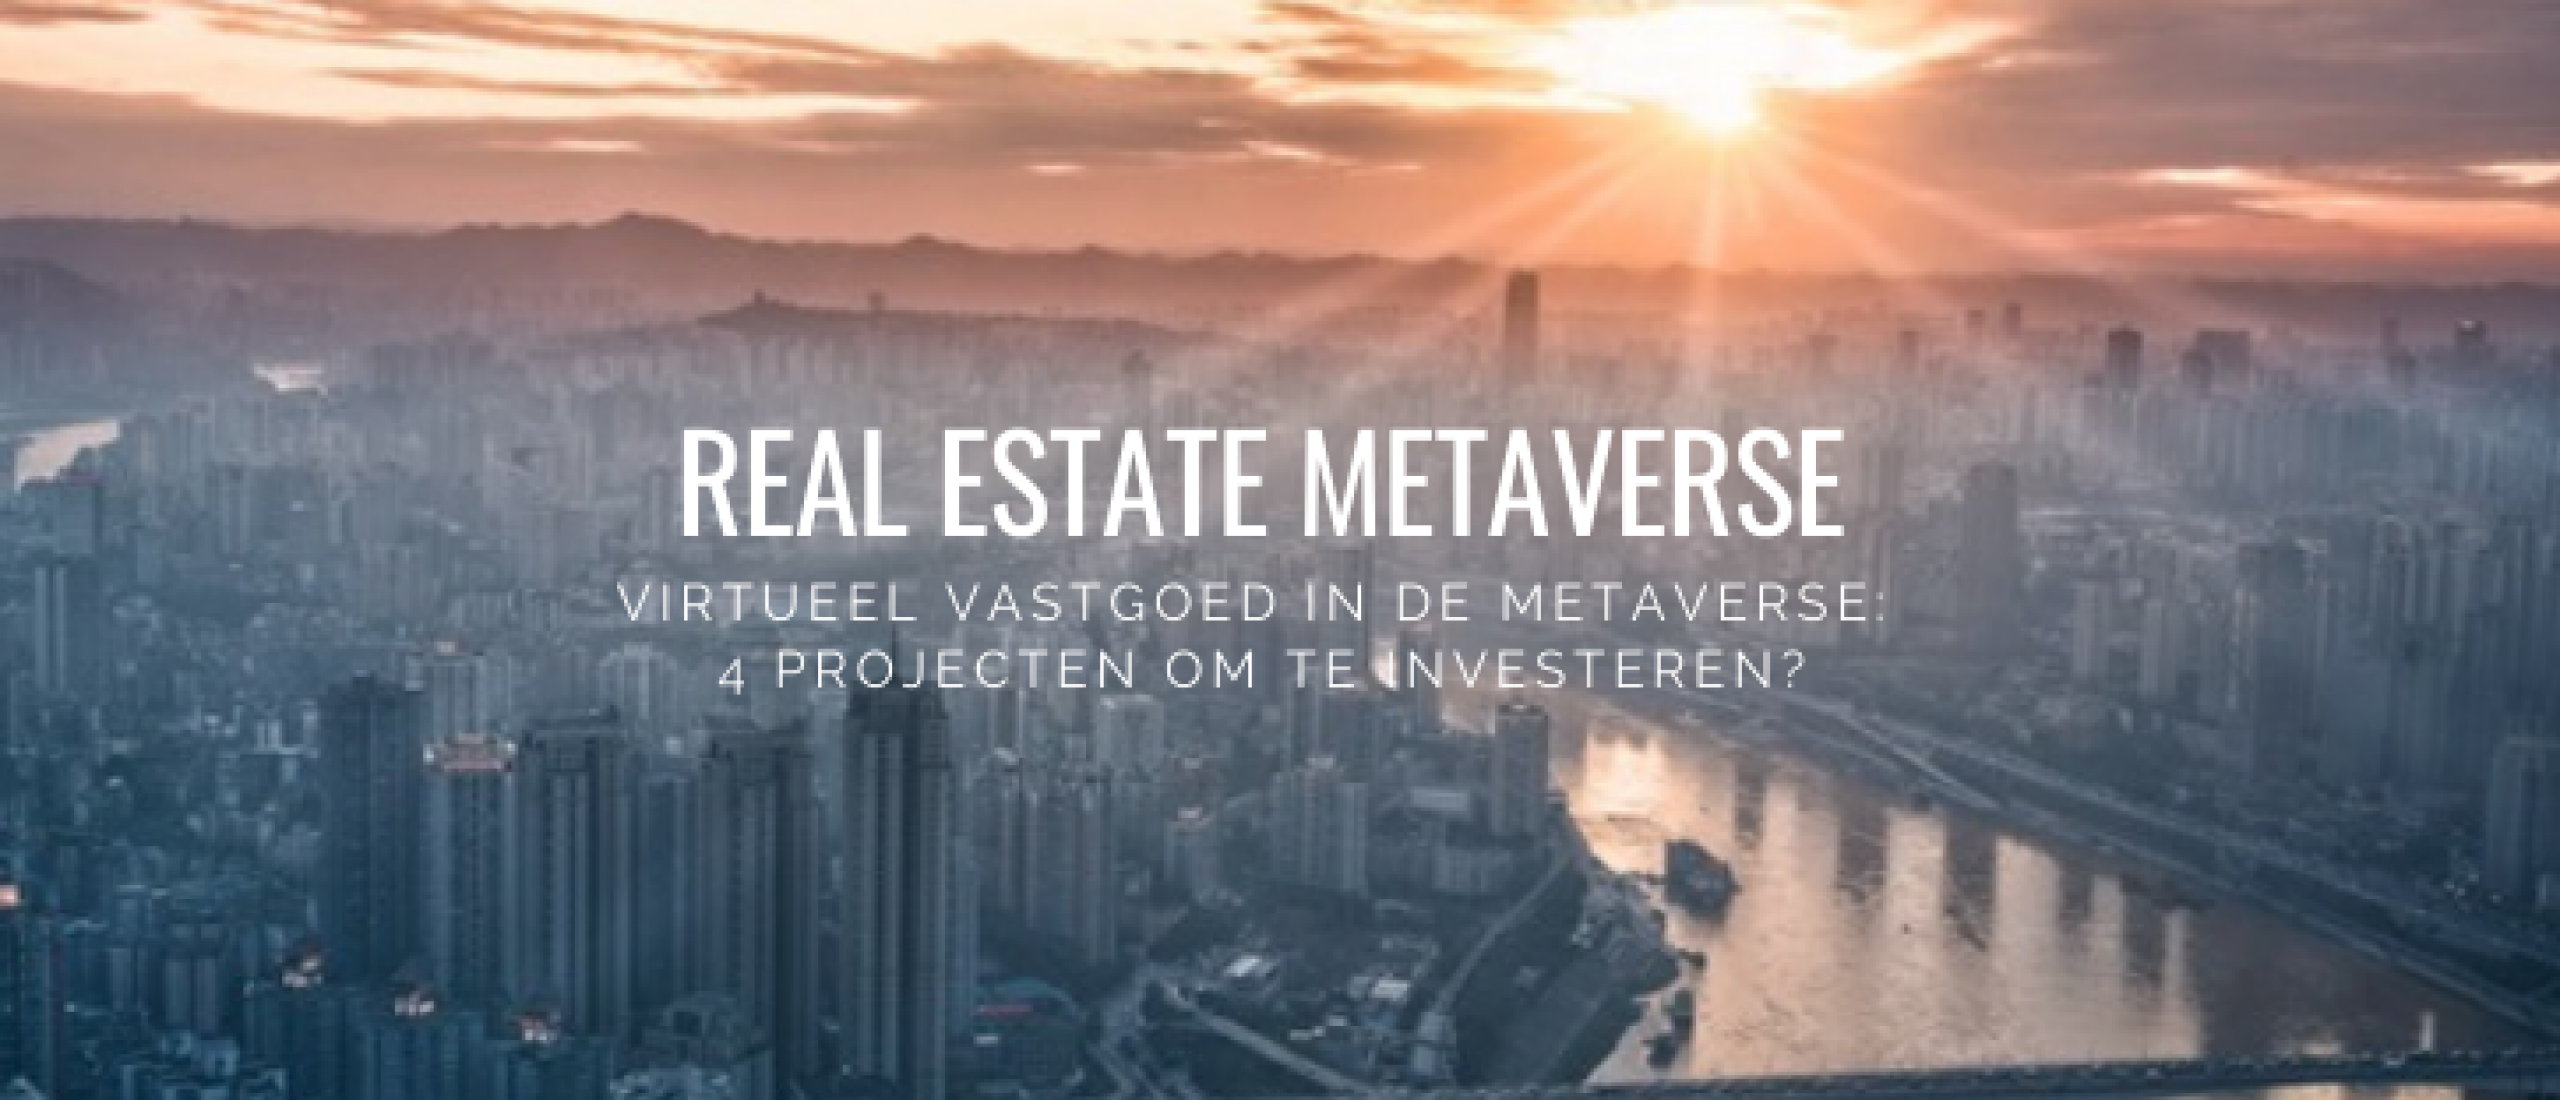 real-estate-metaverse